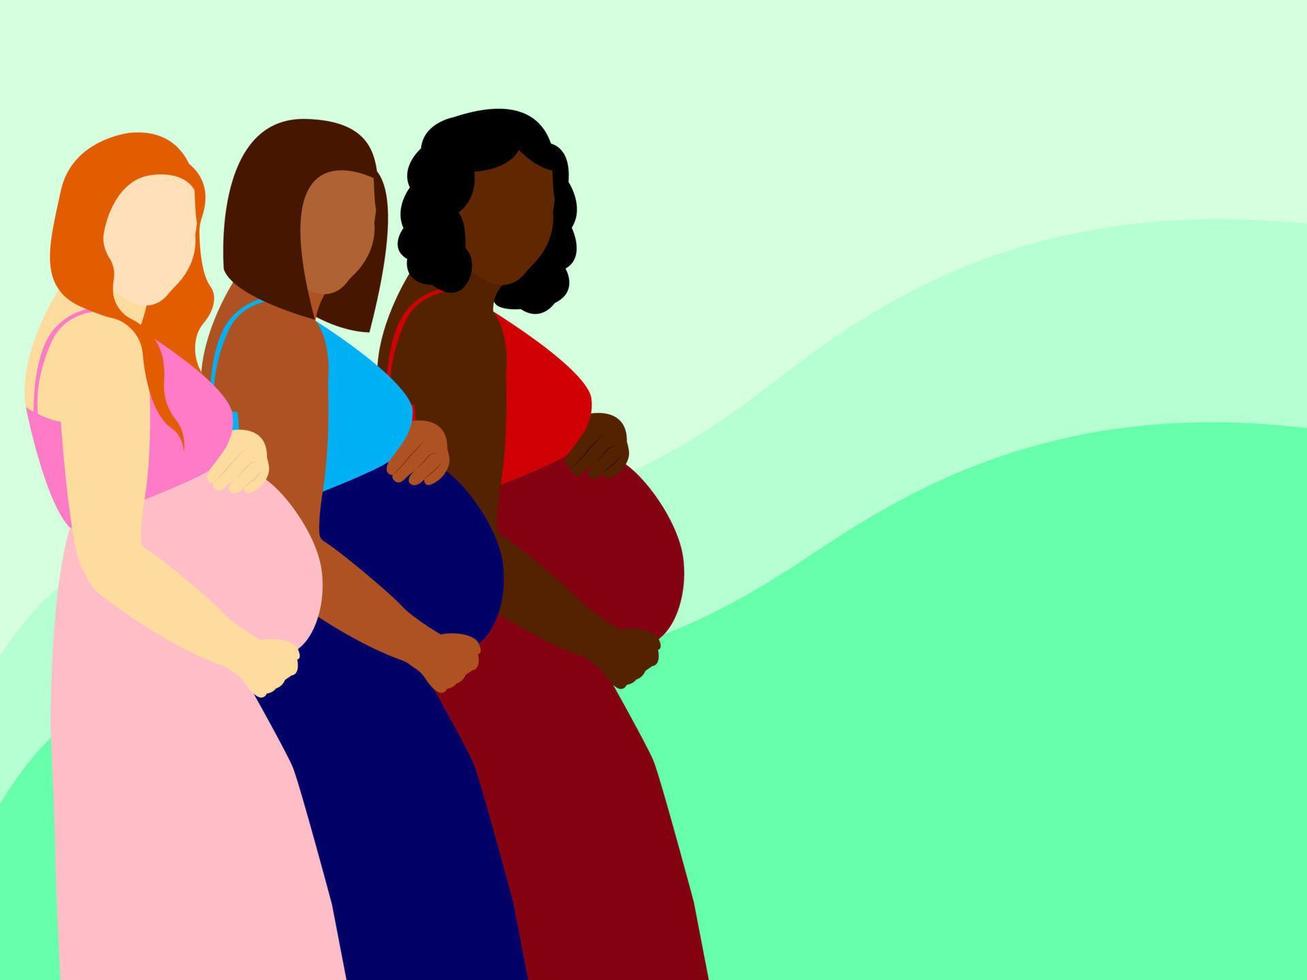 flera gravida kvinnor står i profil och håller sina stora magar. begreppet moderskap, jämlikhet och familj. vektorgrafik. vektor